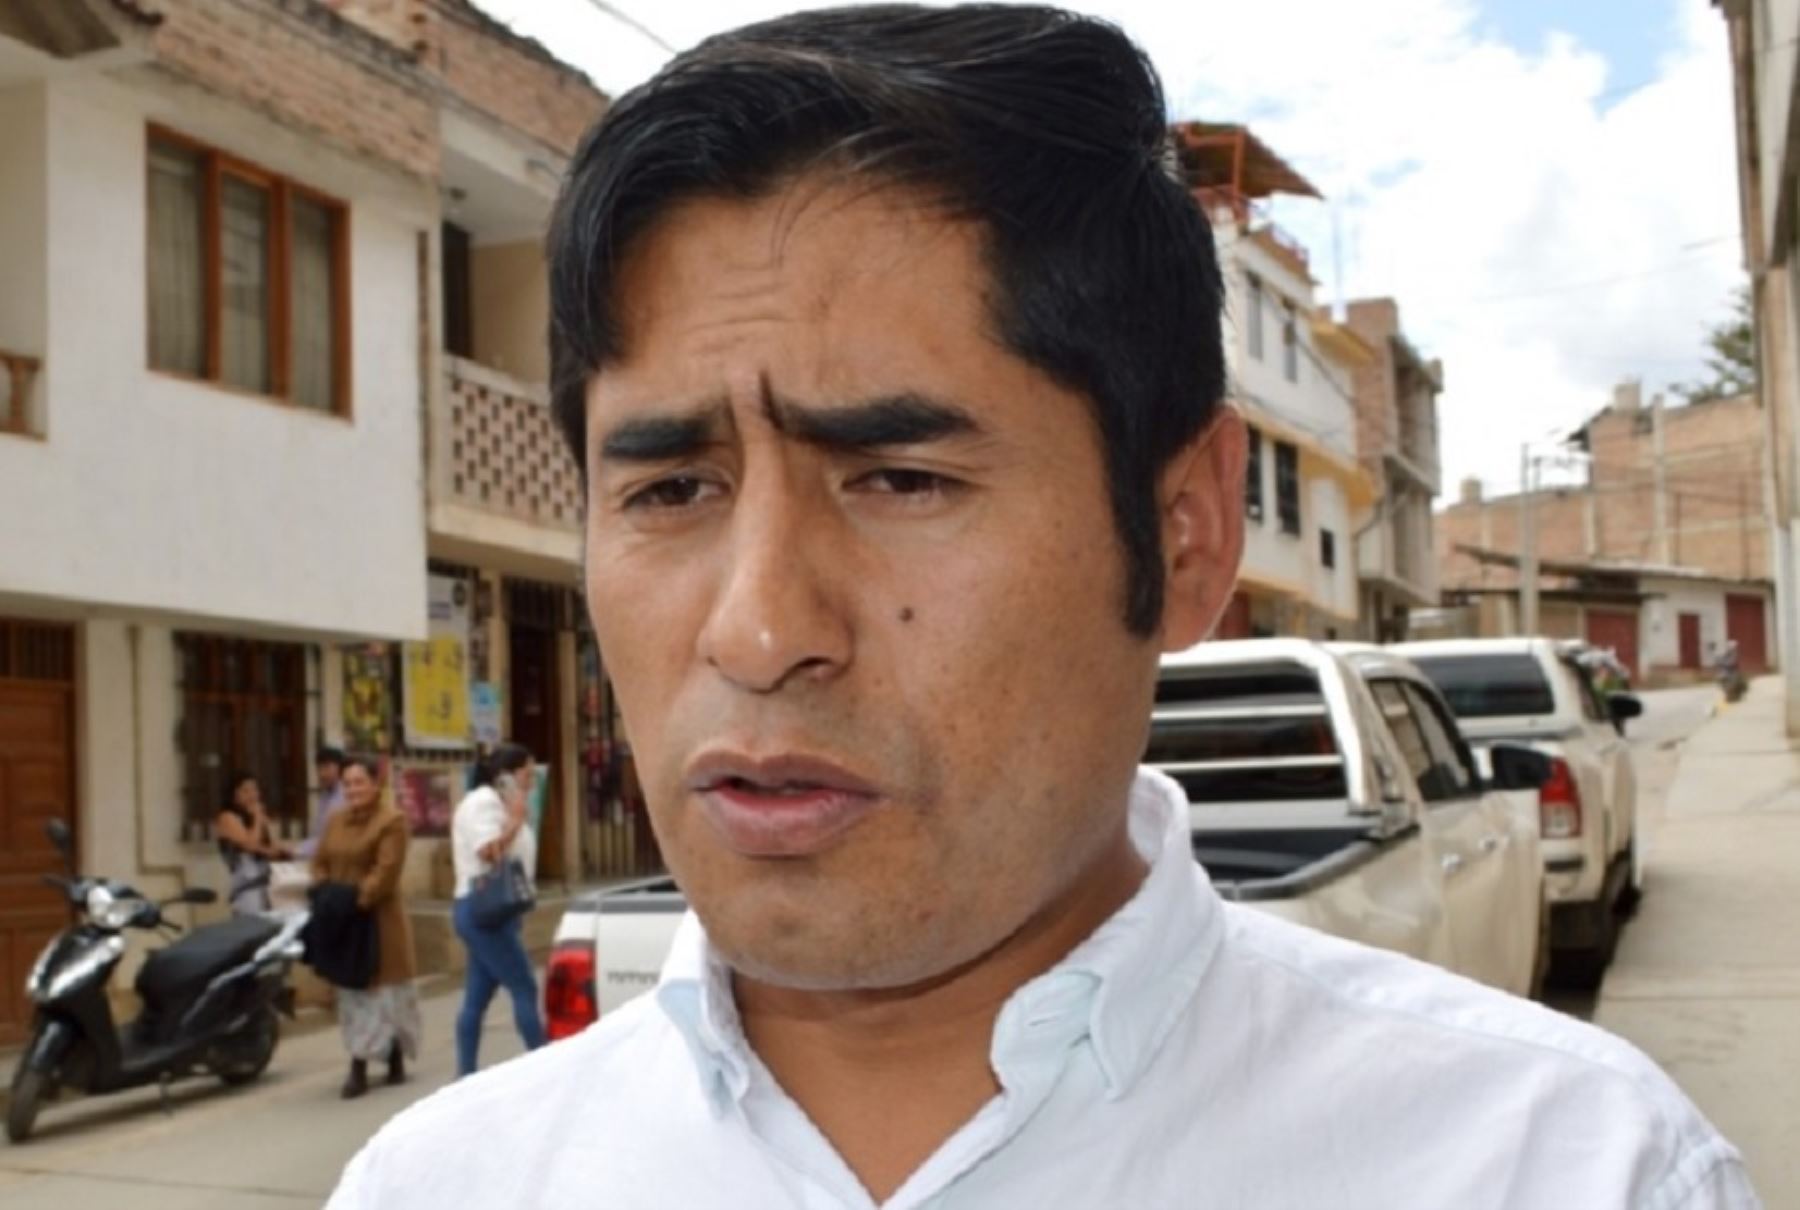 El nuevo gobernador regional de Cajamarca, Roger Guevara Rodríguez, anunció que su gestión se enfocará en desarrollar proyectos de infraestructura vial e hidráulica, sin descuidar el tema del sector educación y salud con la construcción de hospitales en diversas provincias.